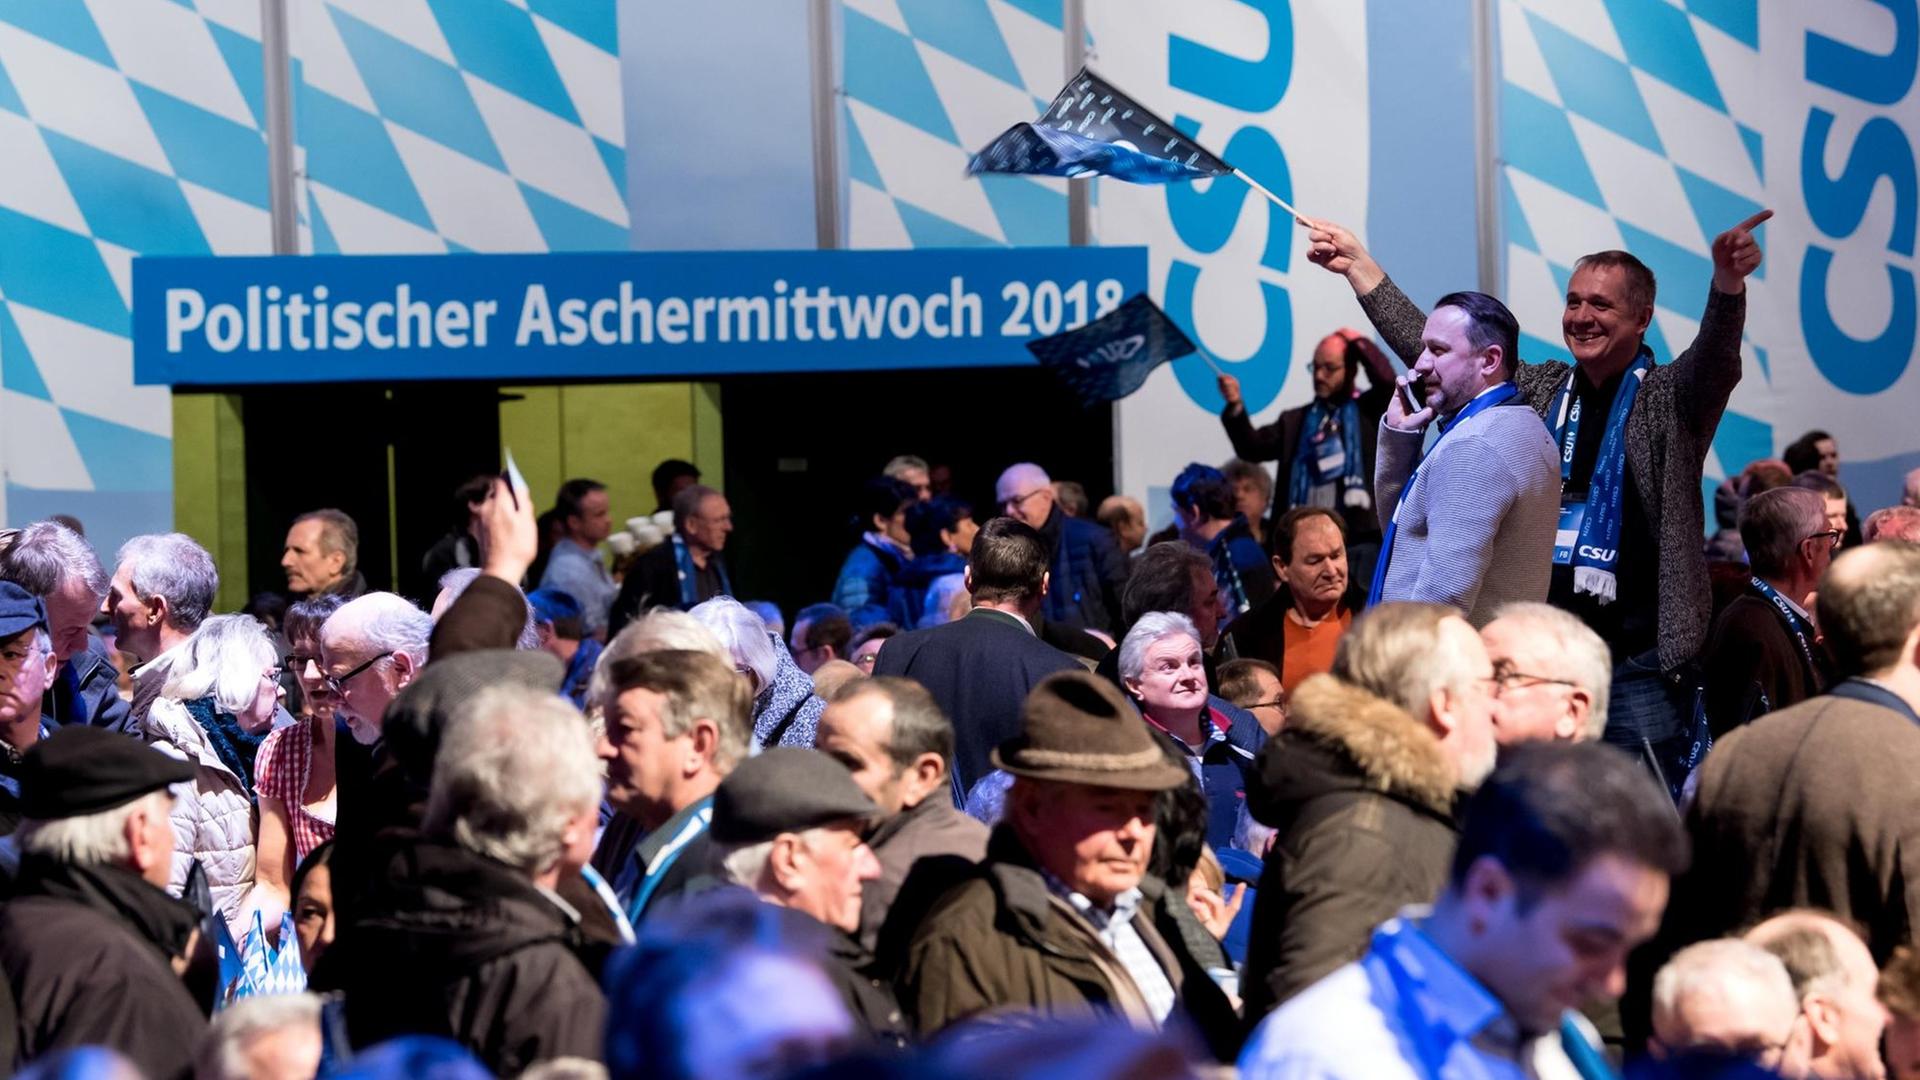 14.02.2018, Bayern, Passau: CSU-Anhänger kommen beim politischen Aschermittwoch der CSU in die Dreiländerhalle. Foto: Sven Hoppe/dpa | Verwendung weltweit